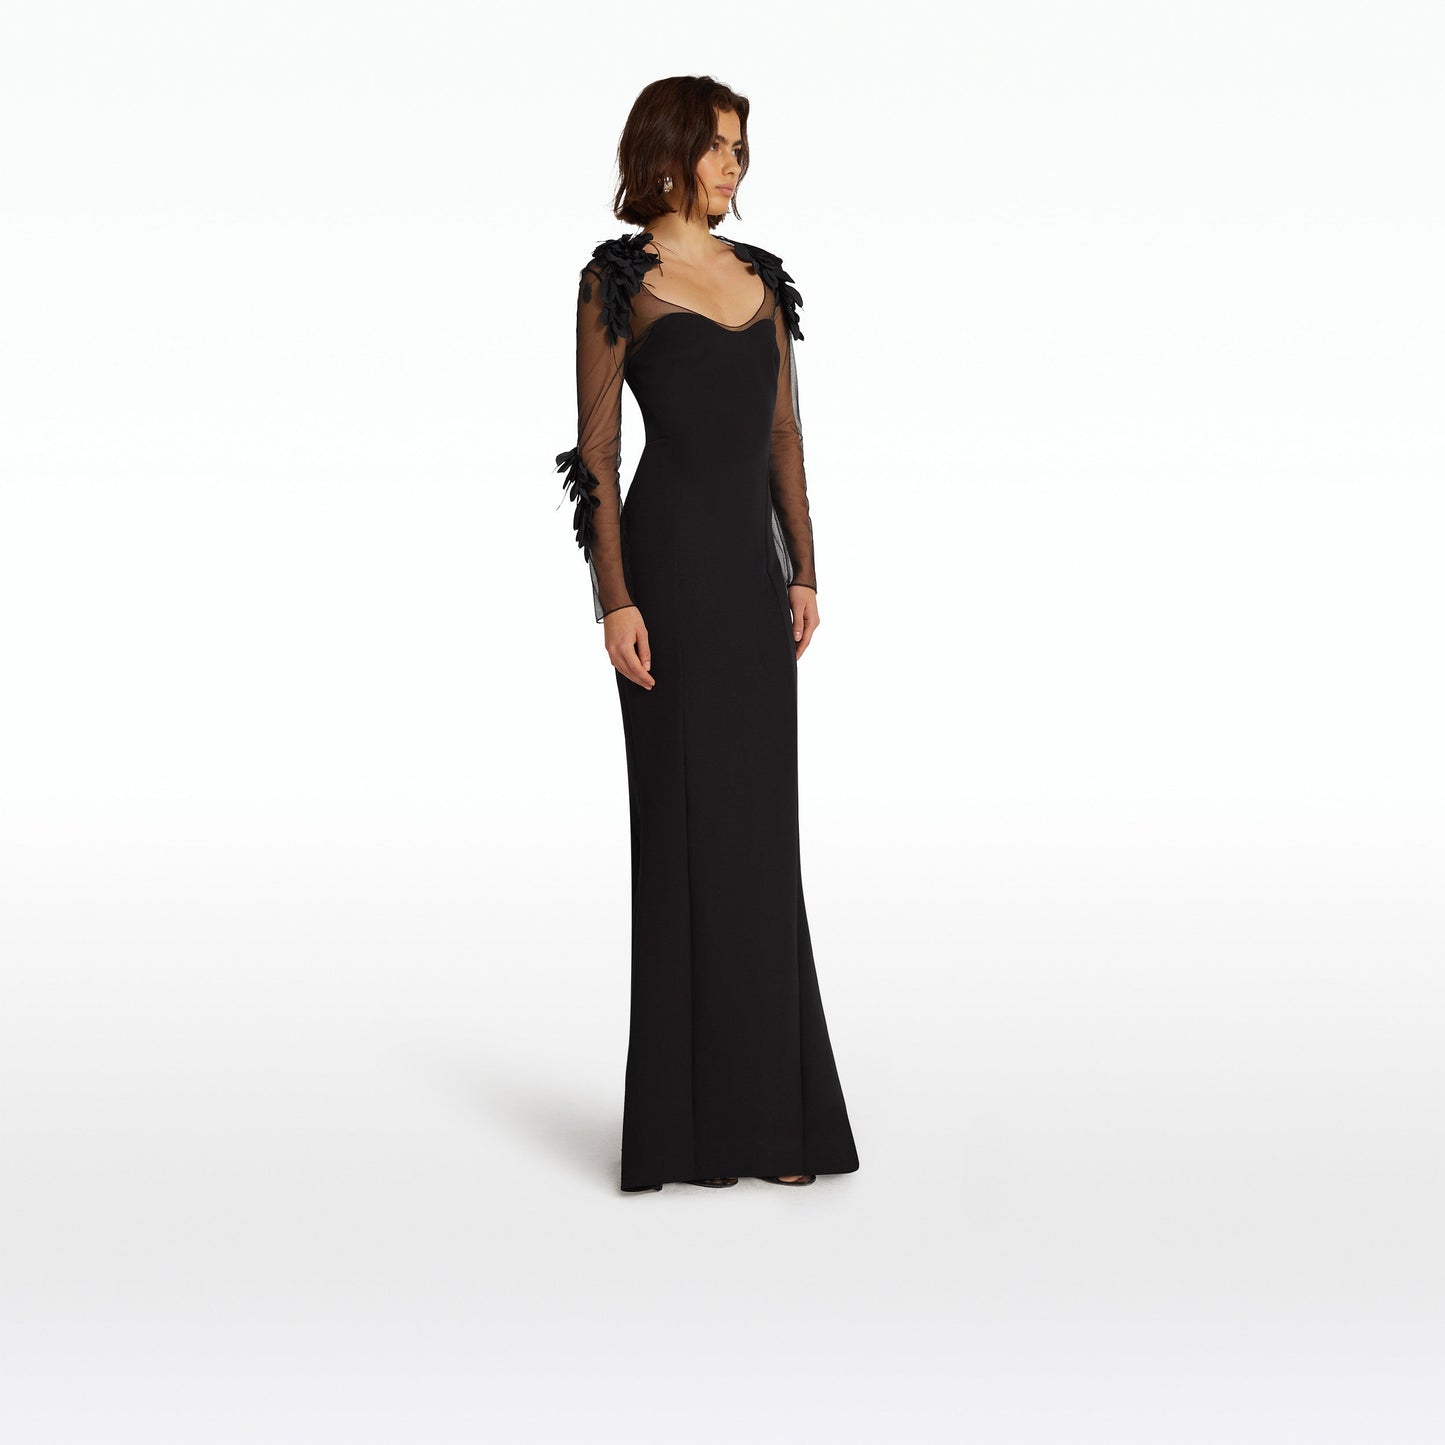 Rosel Black Long Dress